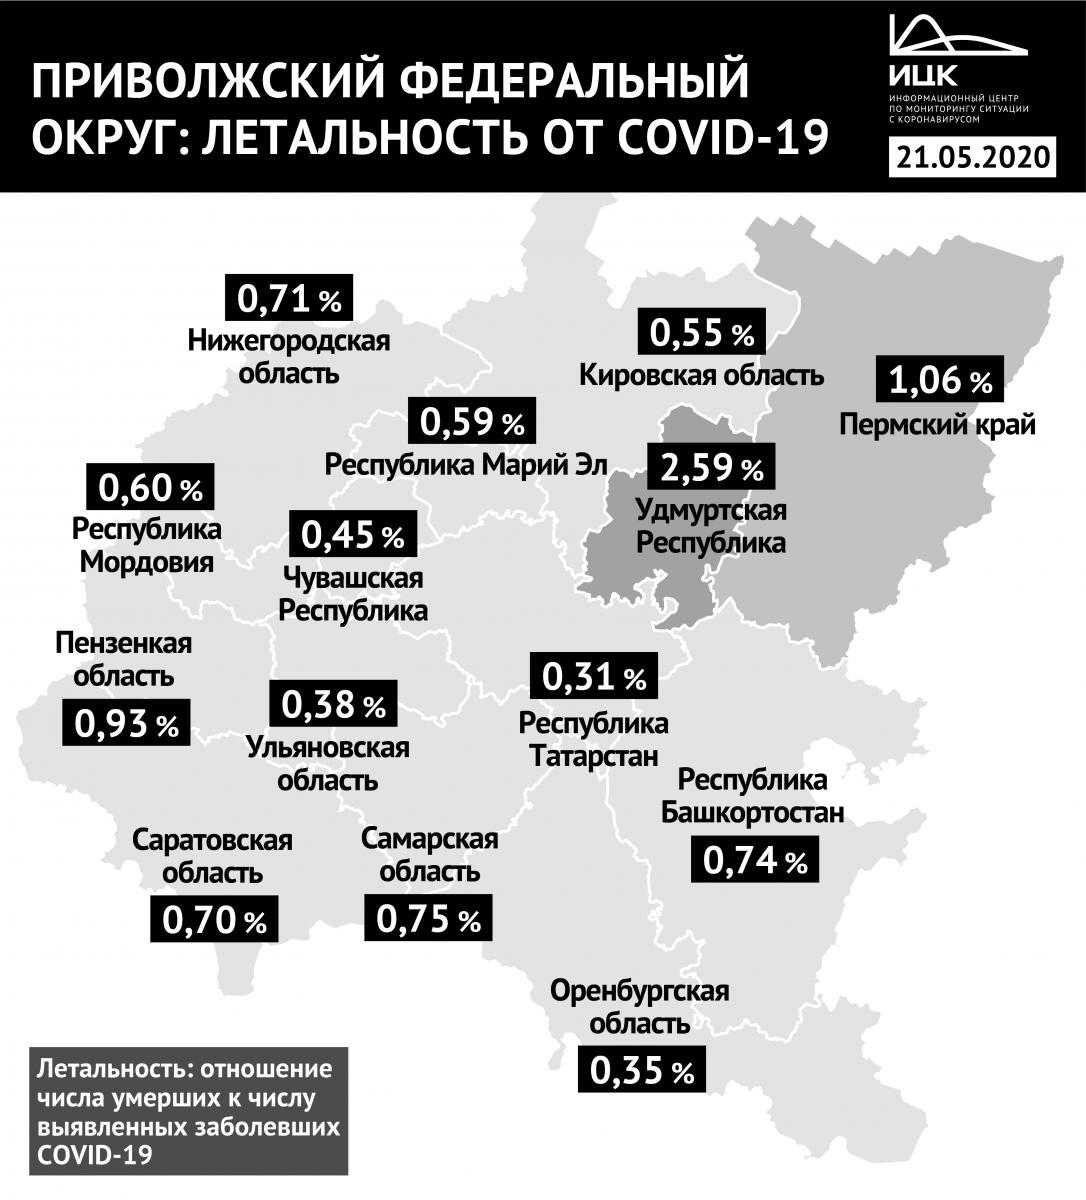 Летальность среди больных COVID-19 в Нижегородской области остается на уровне менее 1%